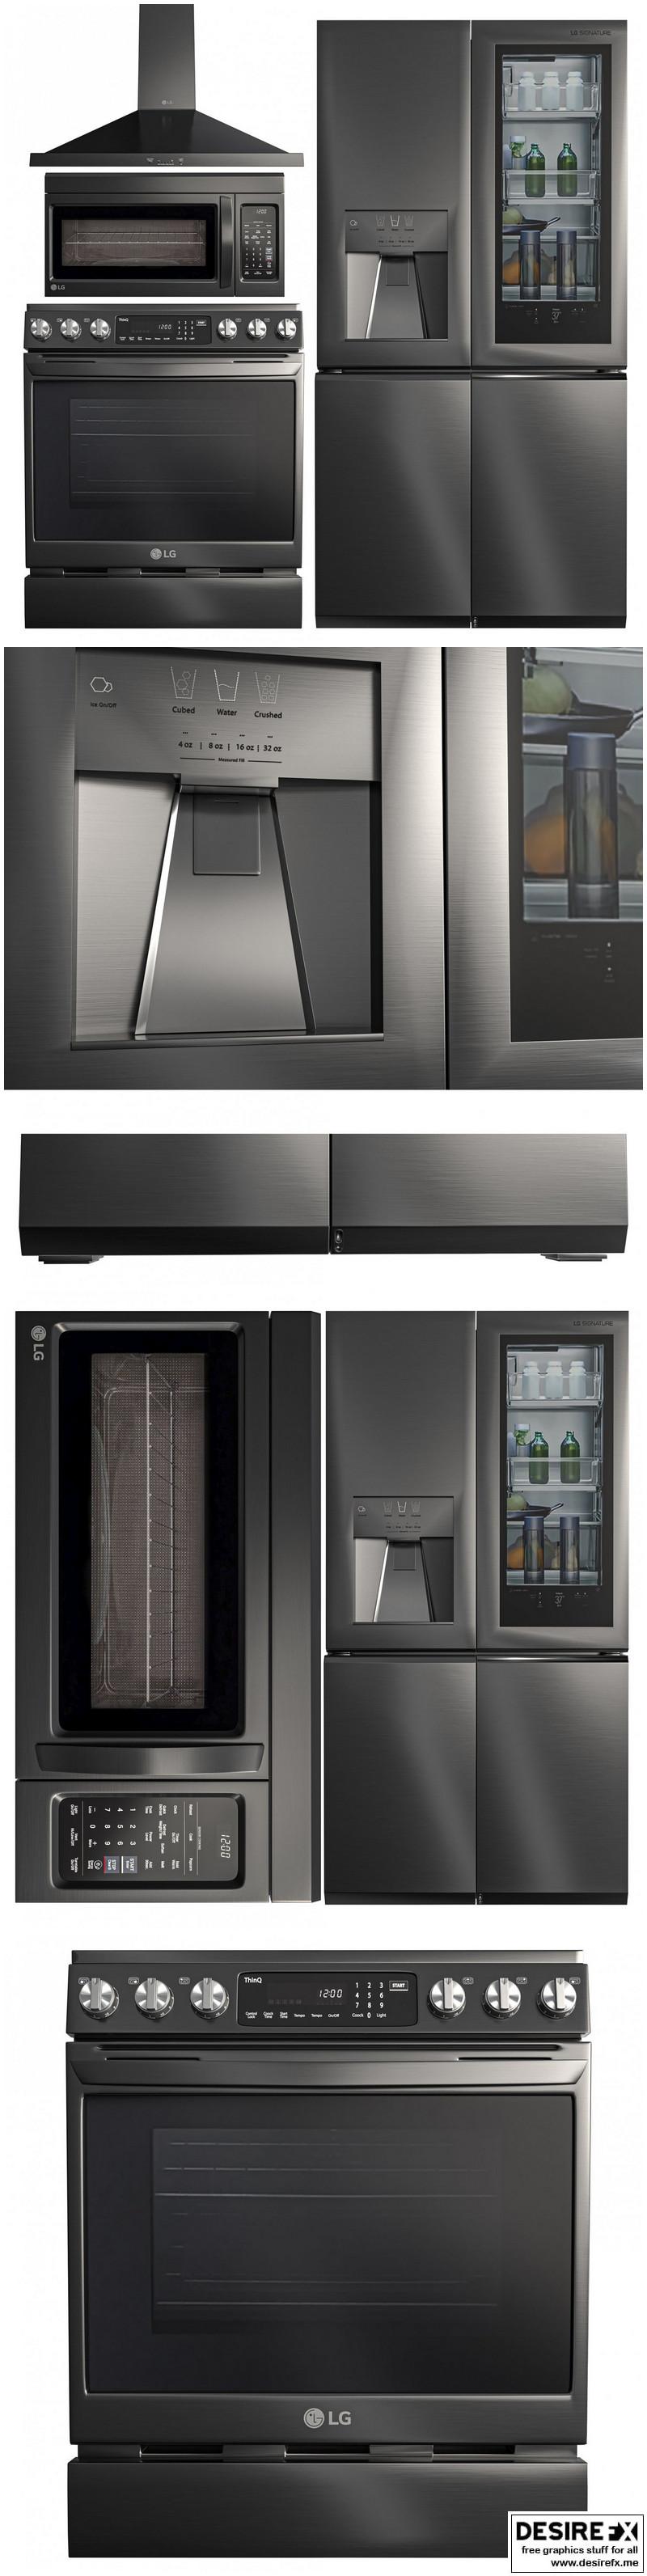 LG kitchen appliances set | 3D model